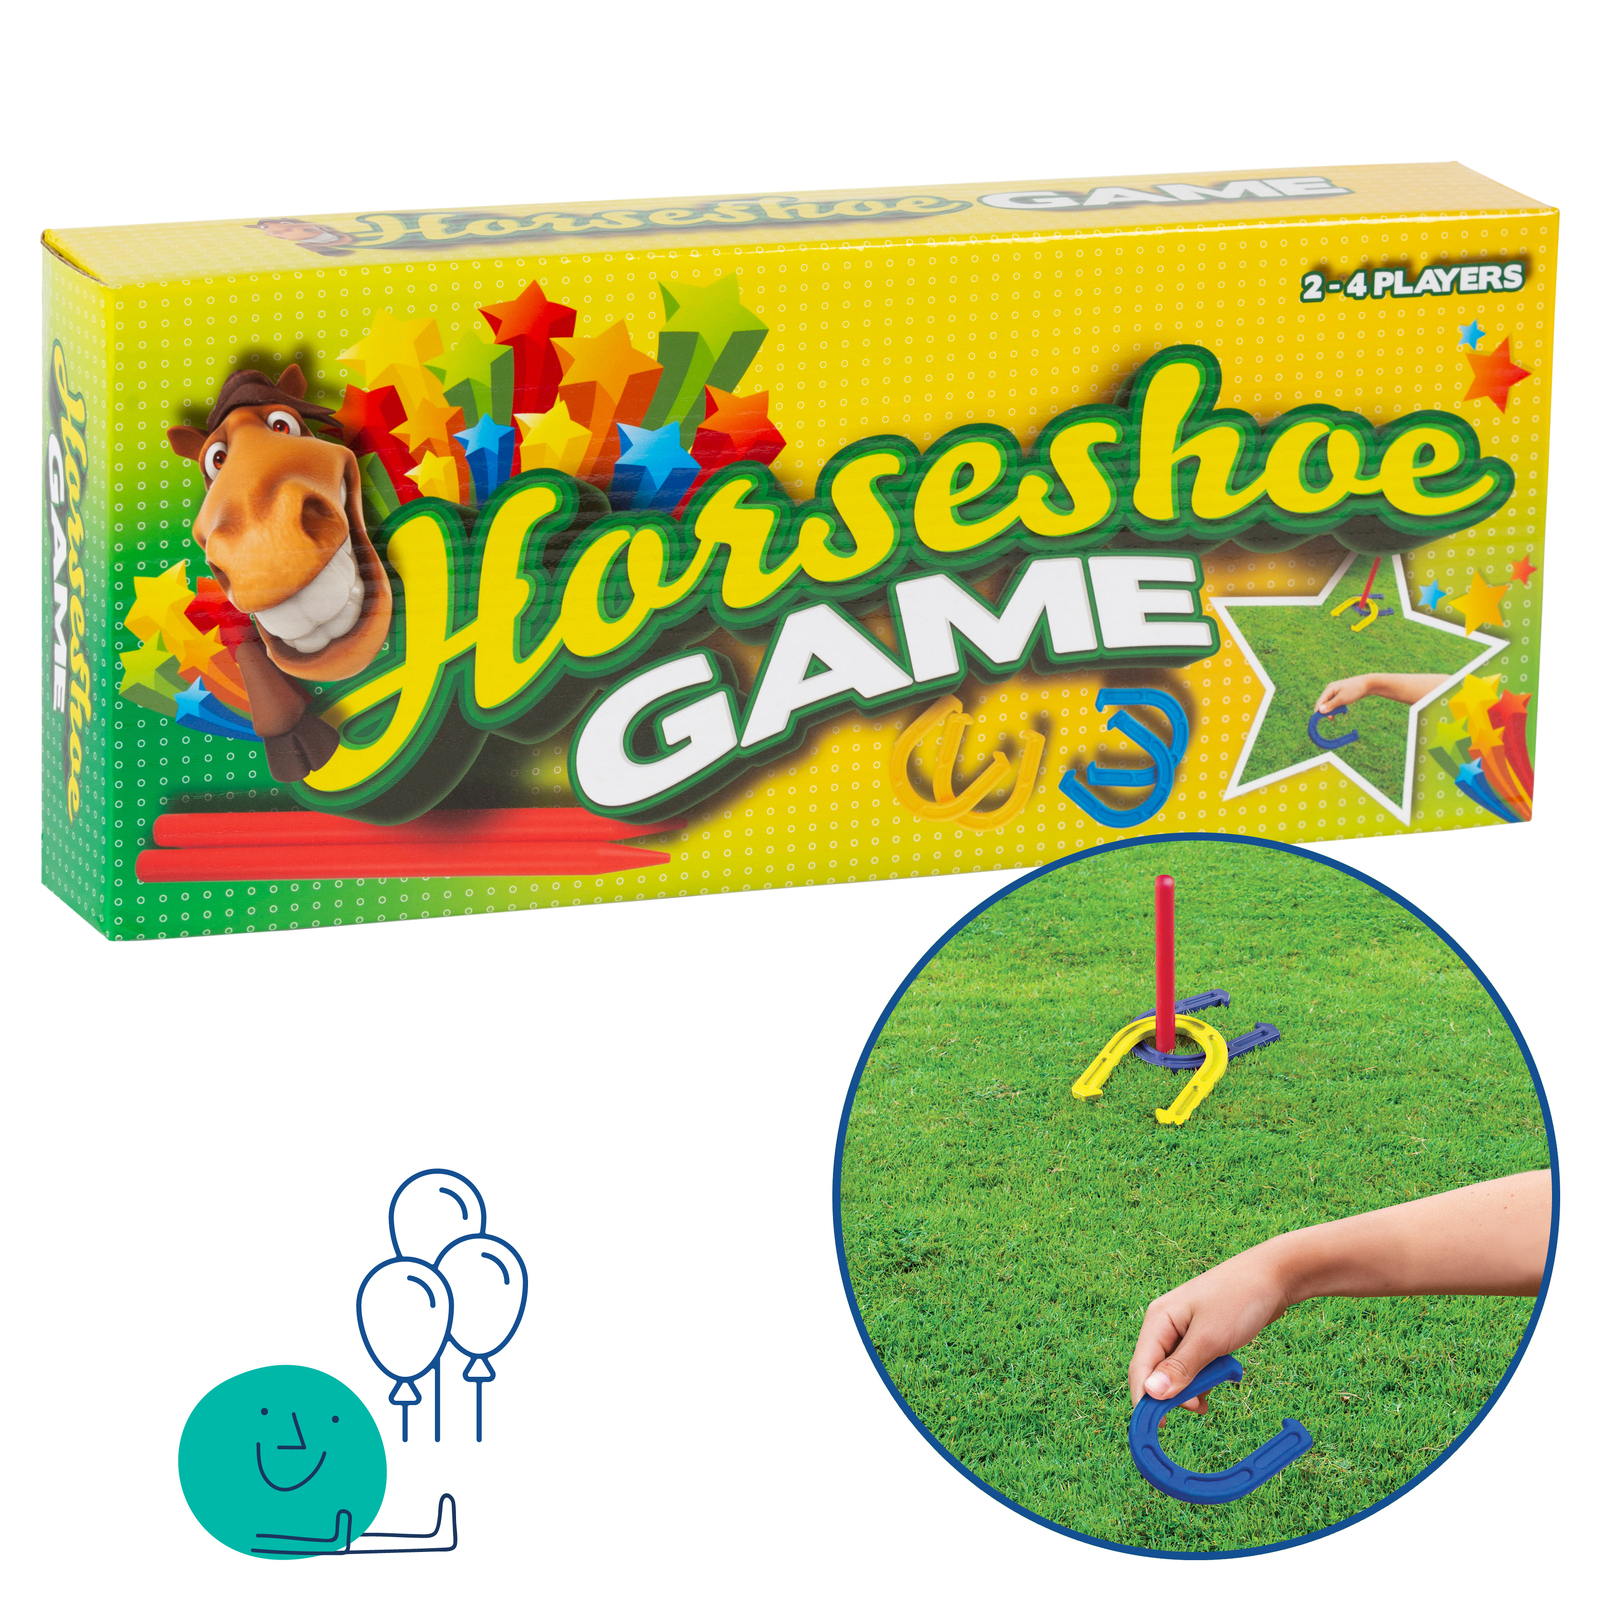 Horseshoe Game 